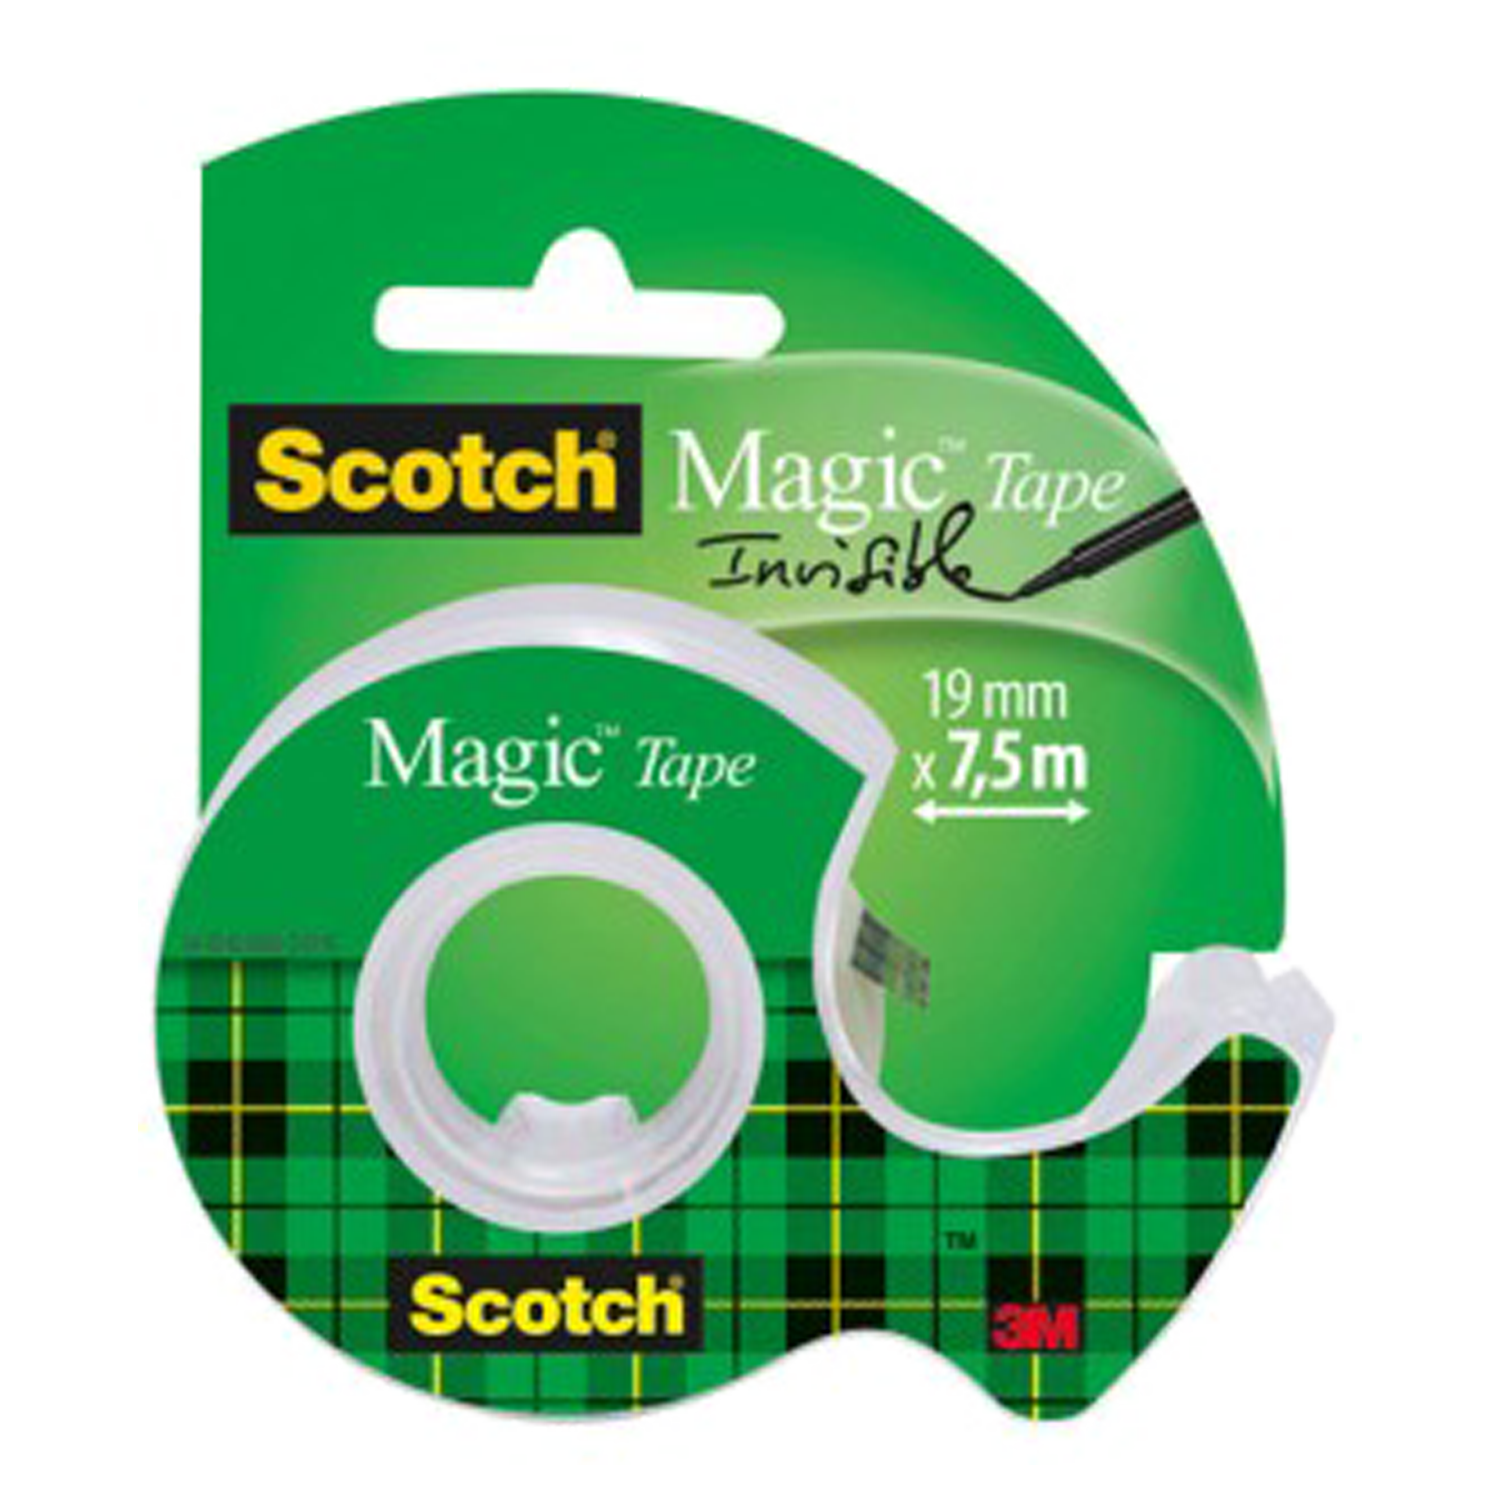 Scotch Magic Tape 19mmx7,5m